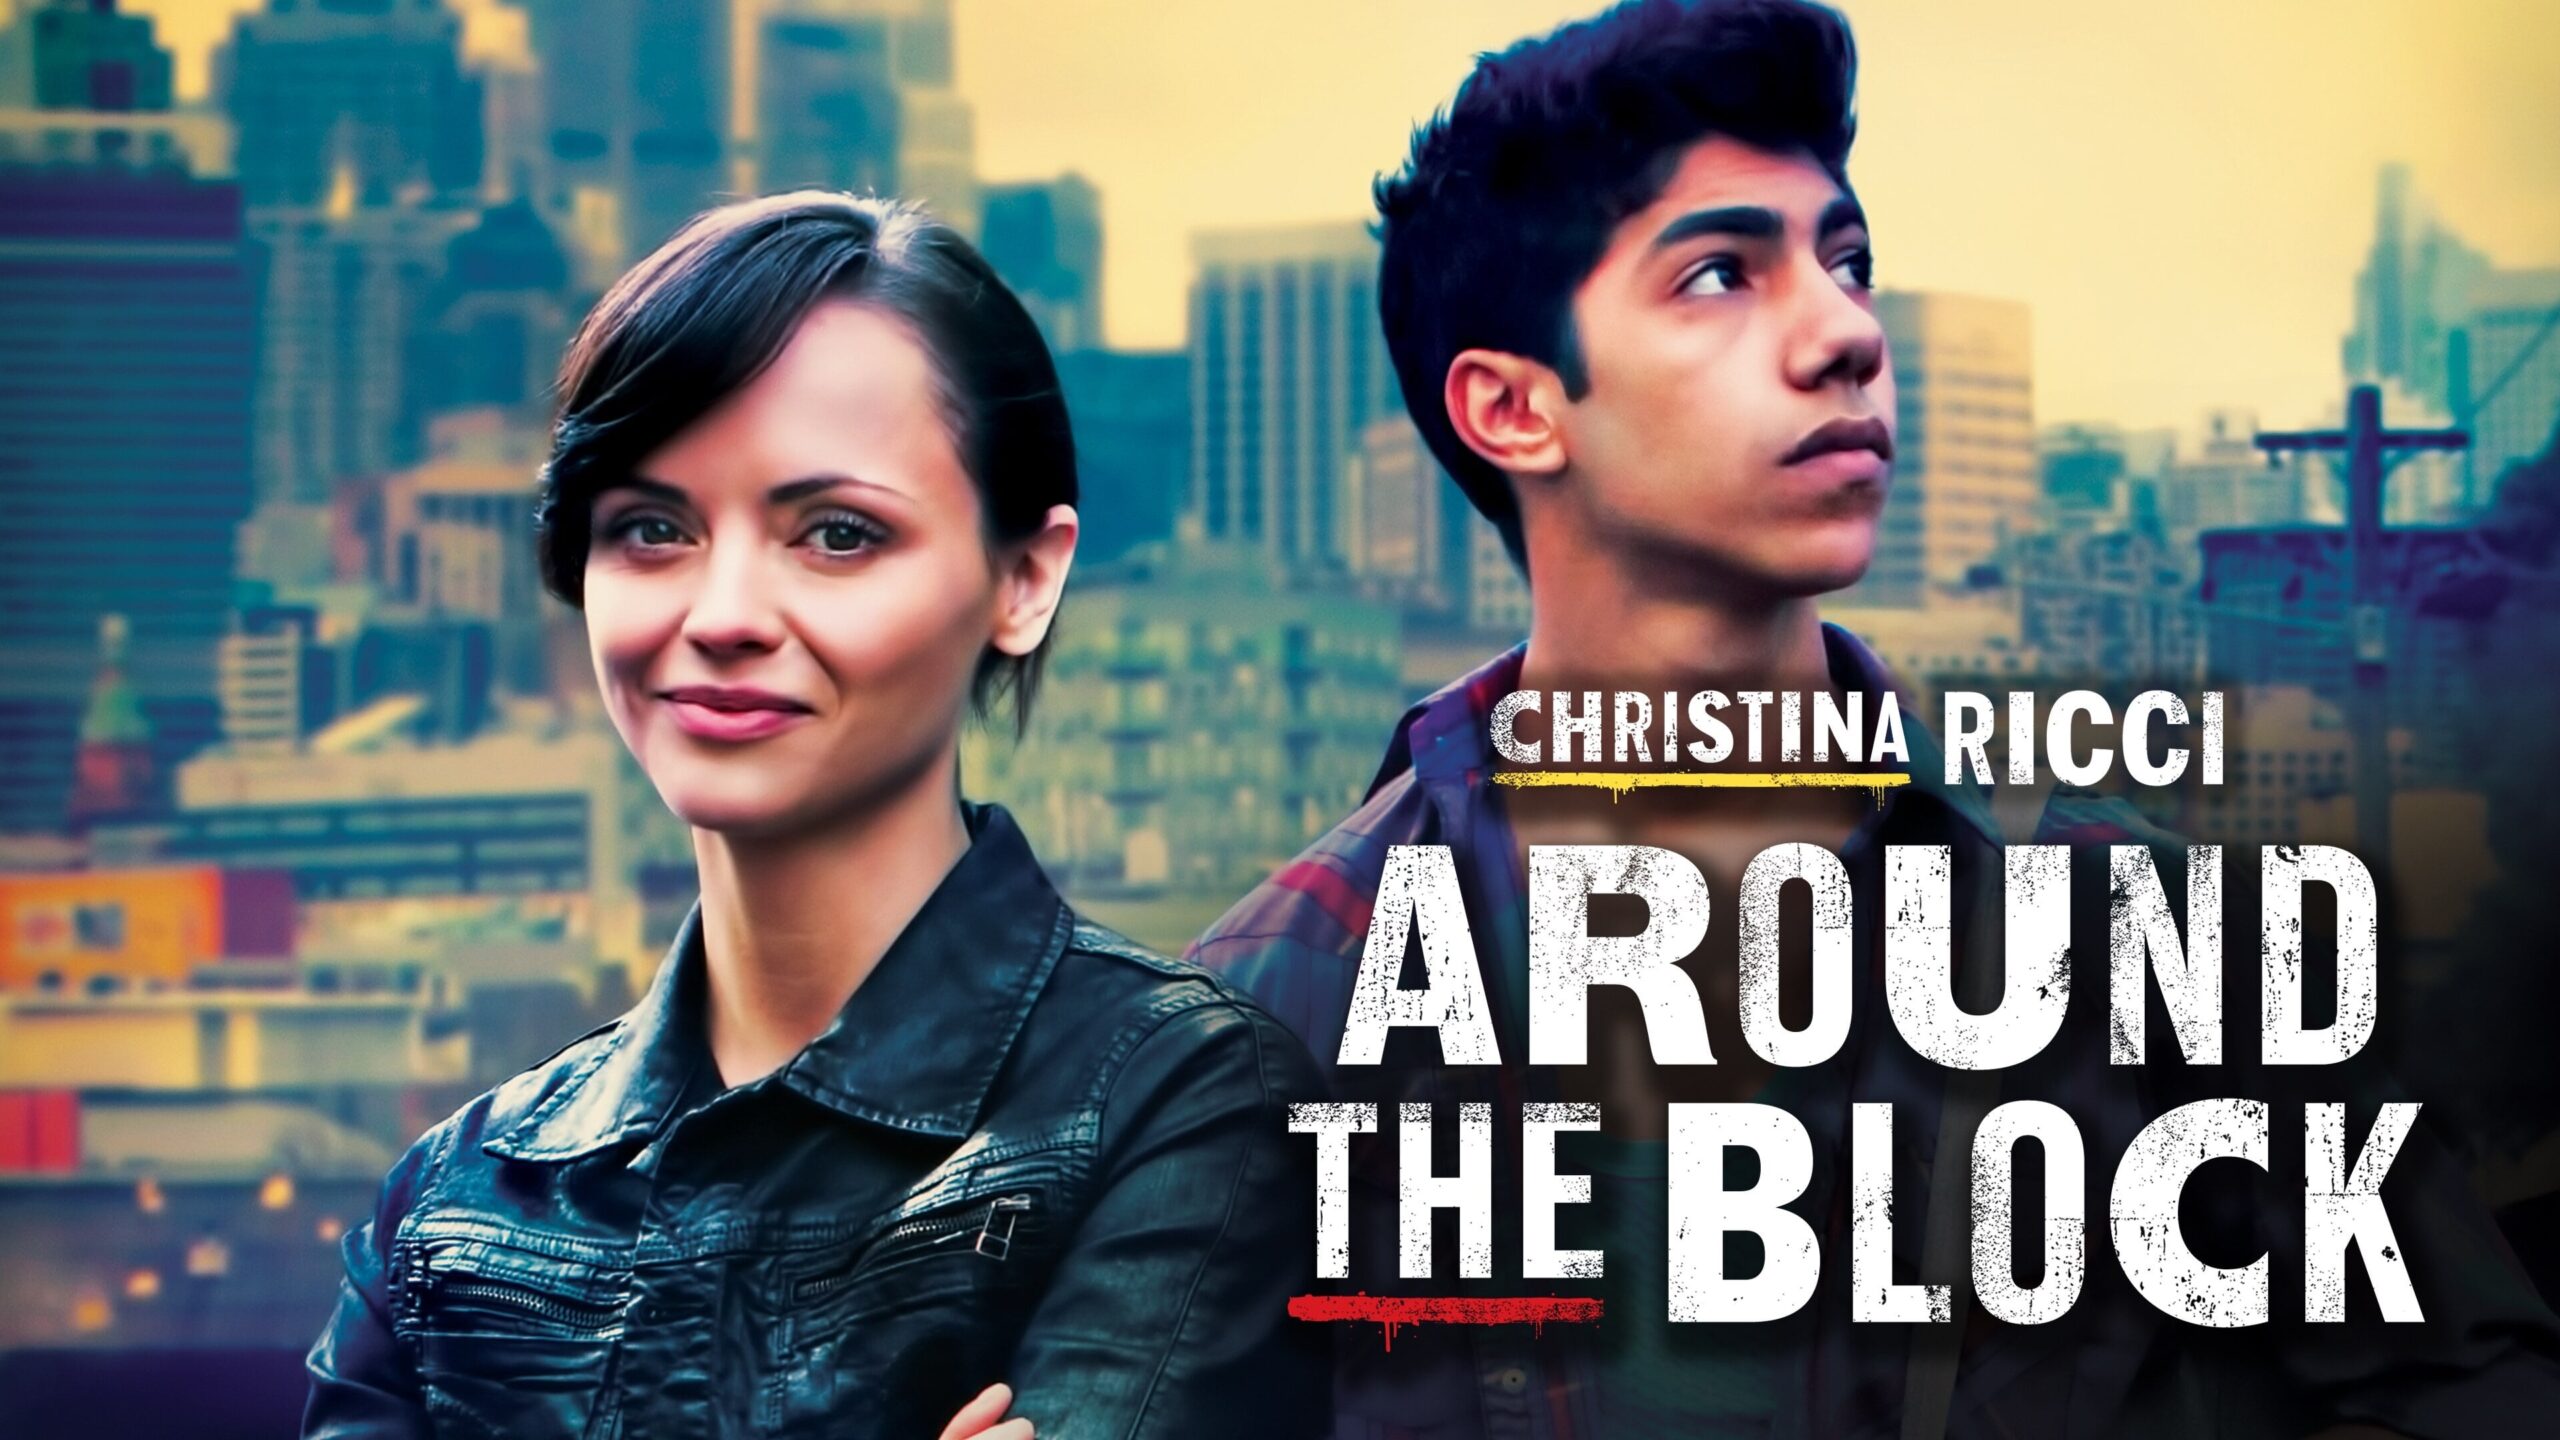 دانلود فیلم Around the Block 2013